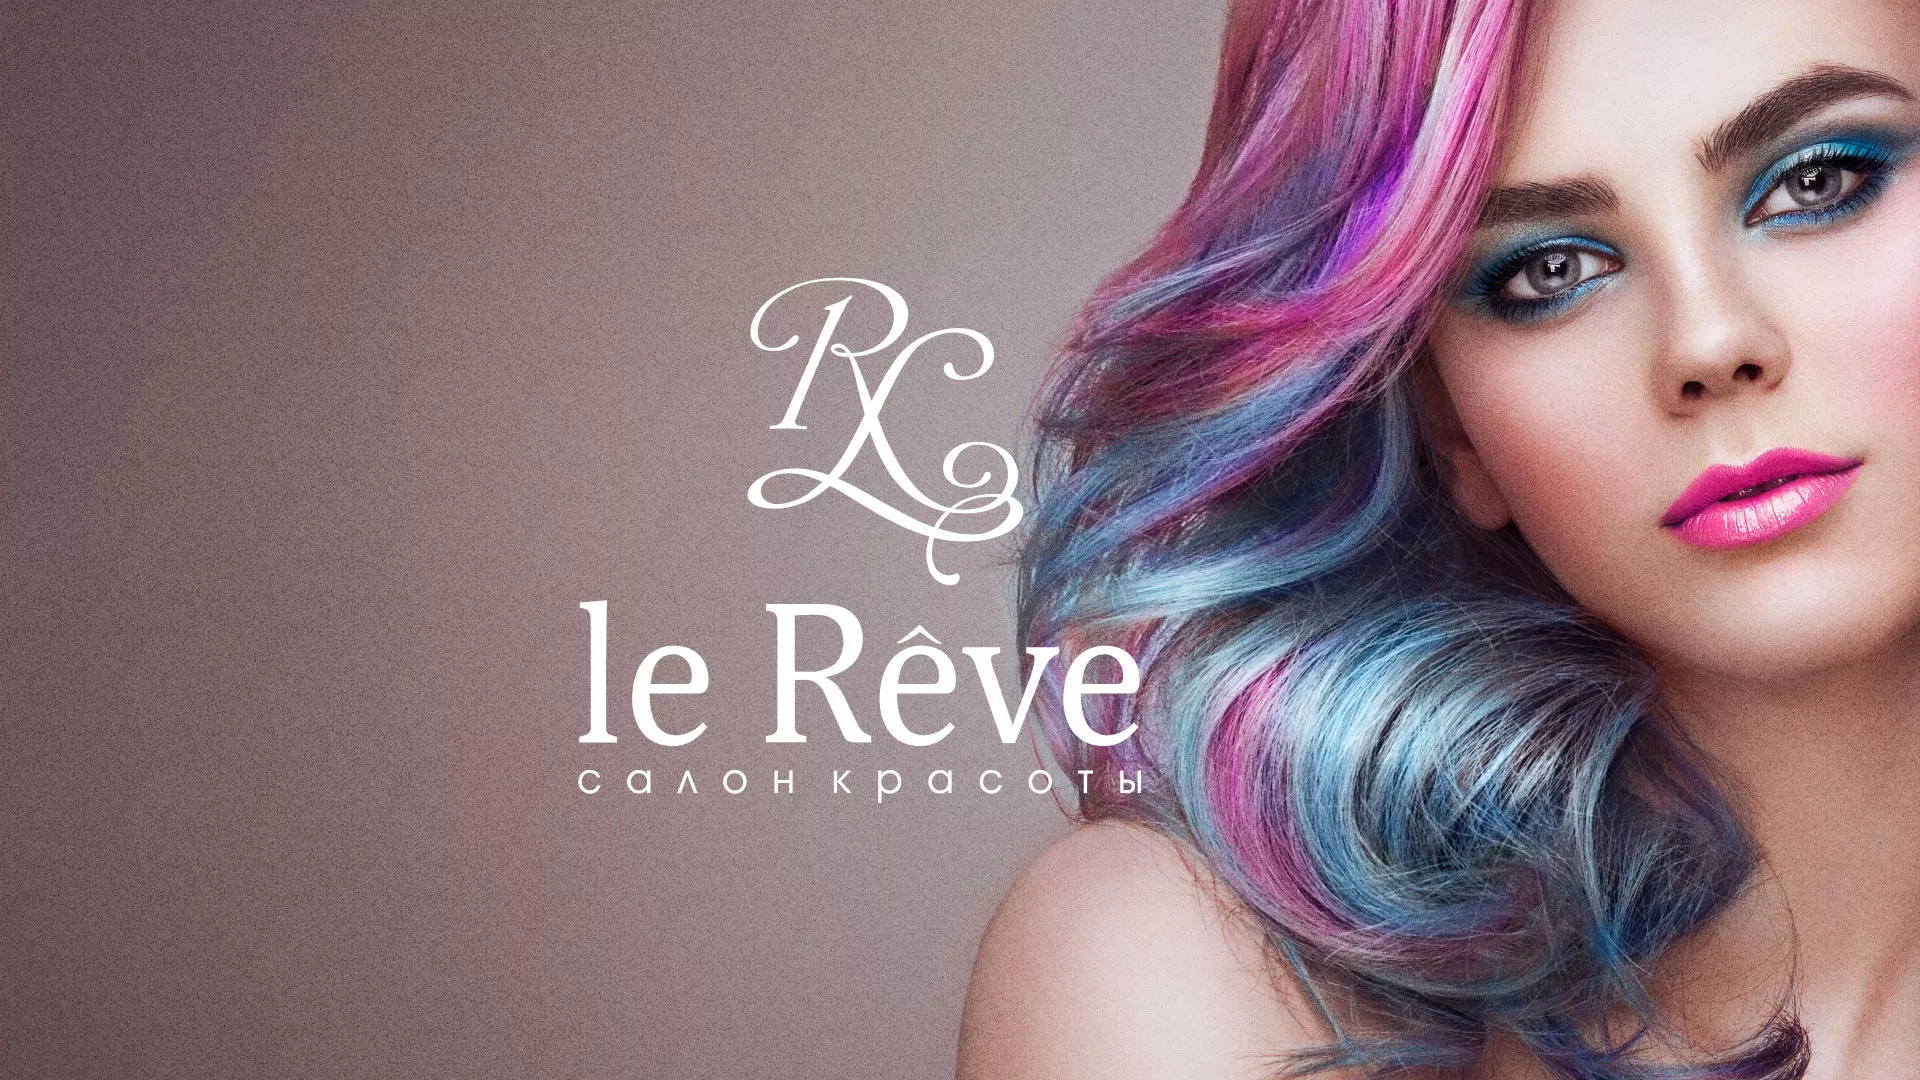 Создание сайта для салона красоты «Le Reve» в Челябинске